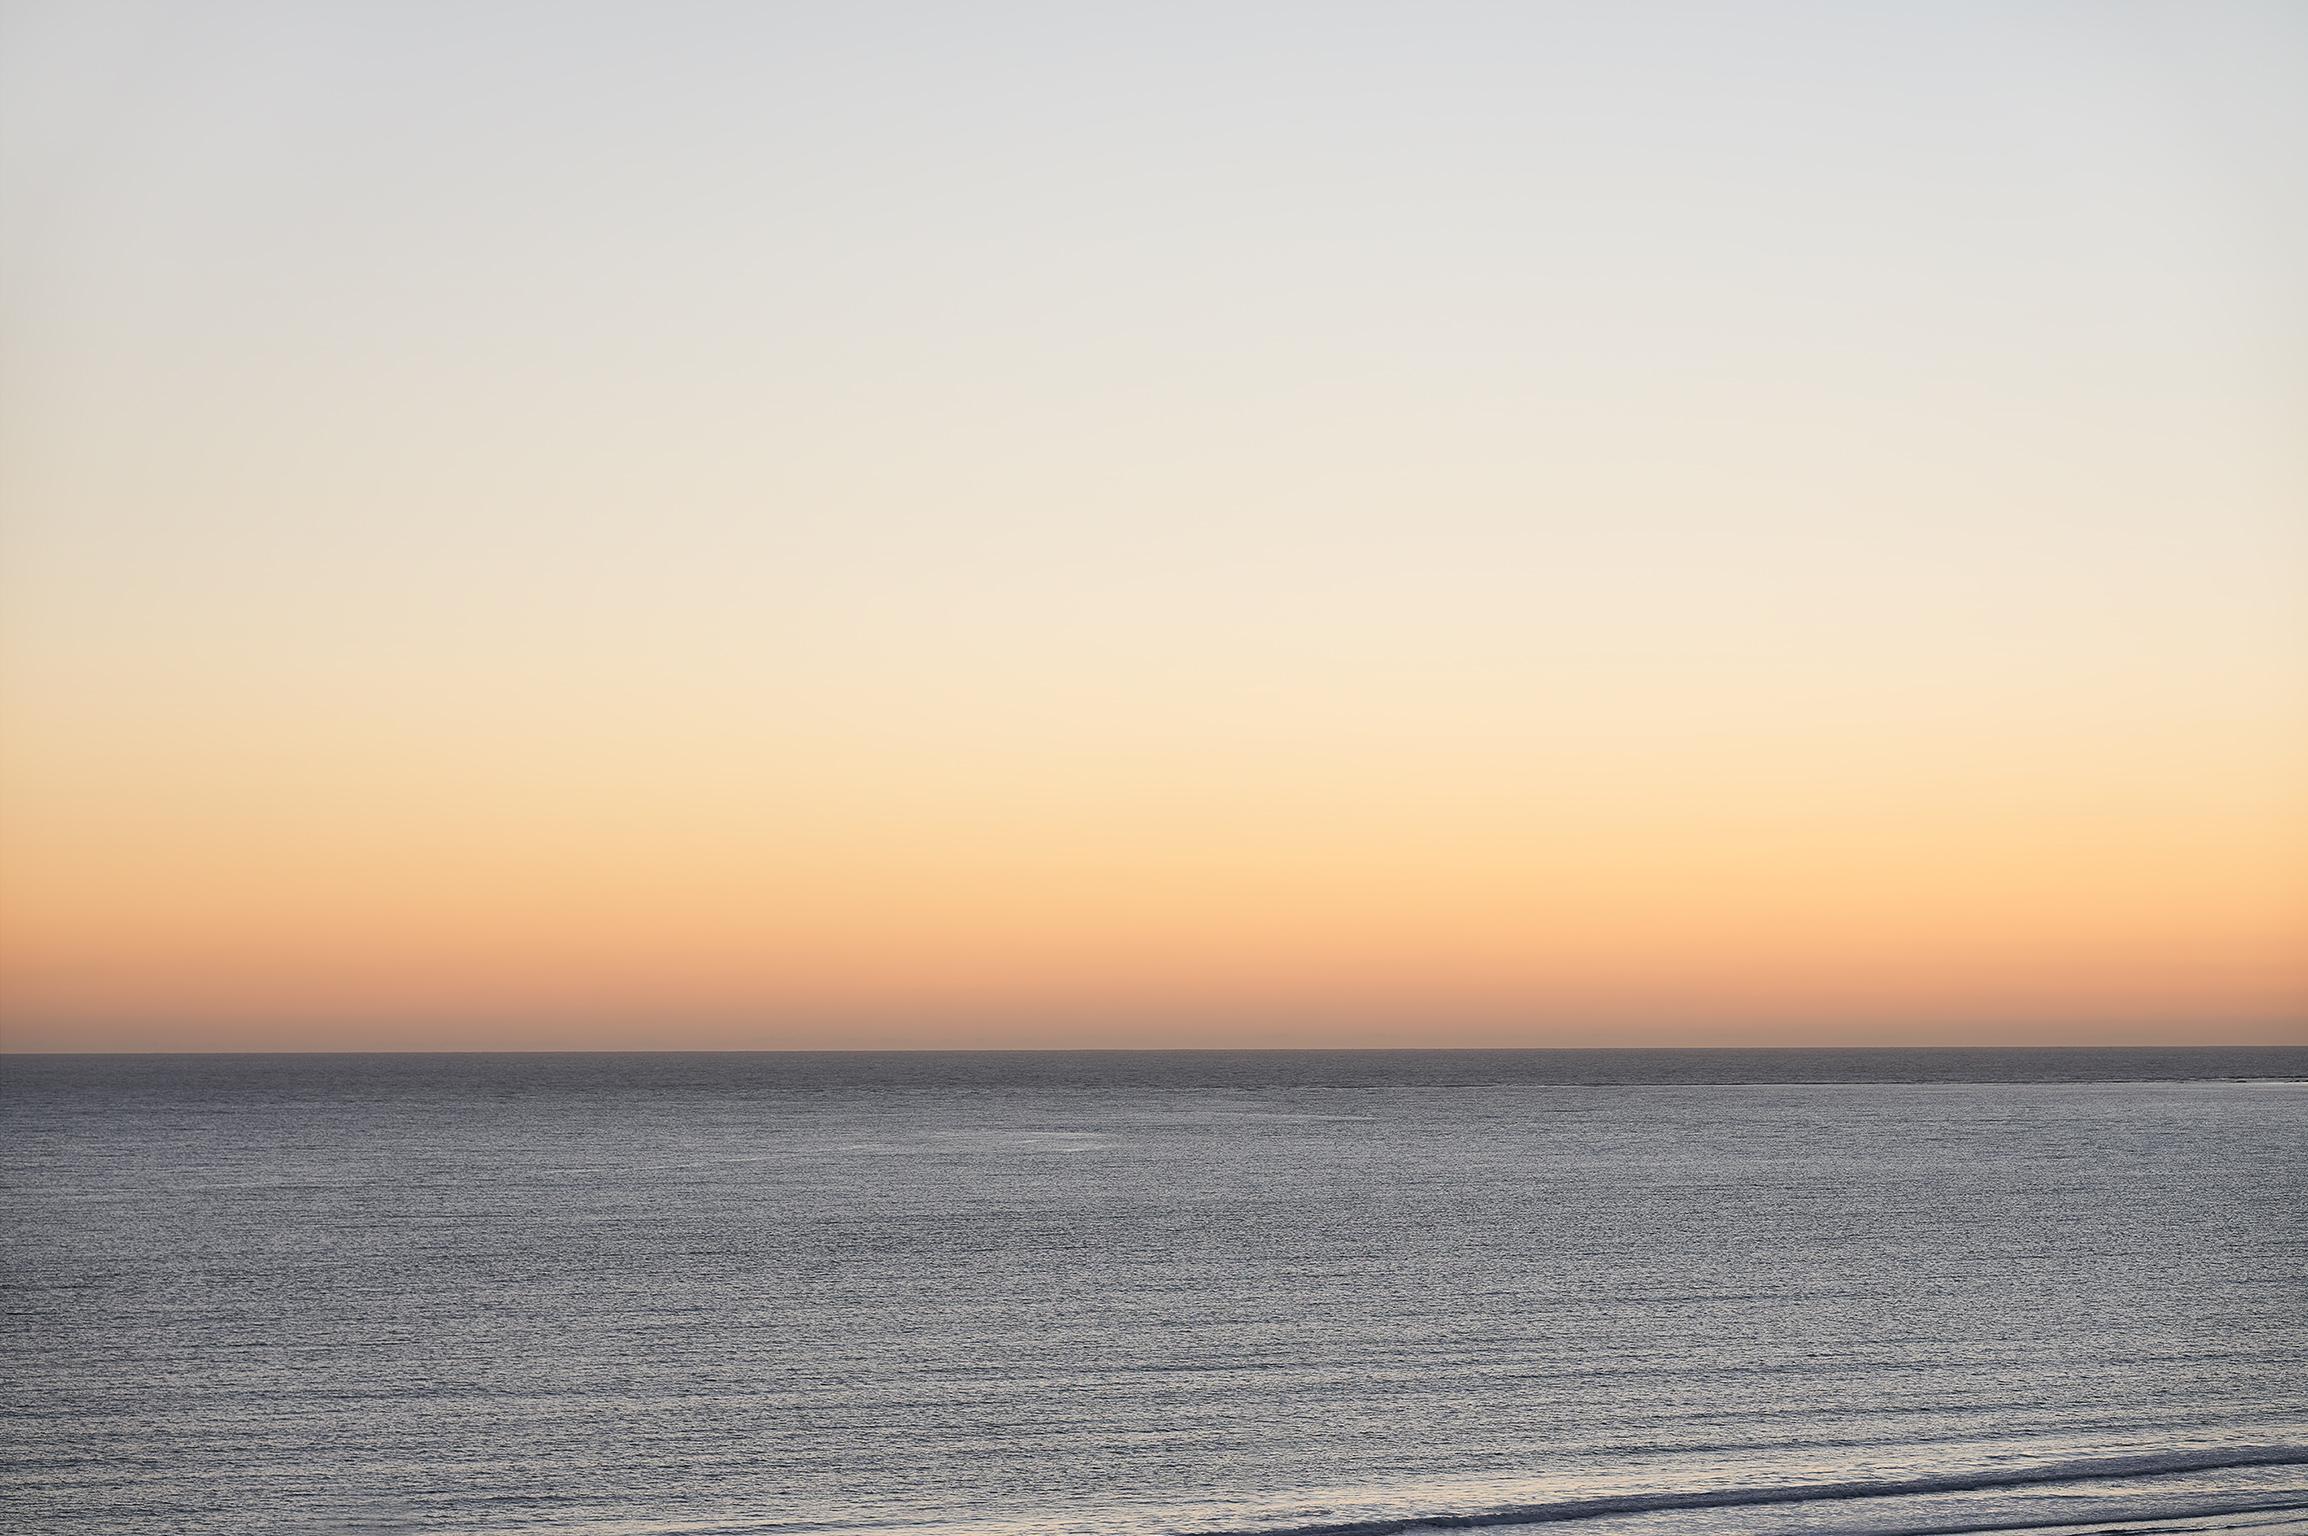 Photographie hypnotique à grande échelle de la série Seascape de l'artiste, un ensemble d'œuvres capturant les surfaces tactiles et la nature monochromatique de l'eau océanique et des paysages de nuages.
 
Morning Glow par Frank Schott

48 x 72